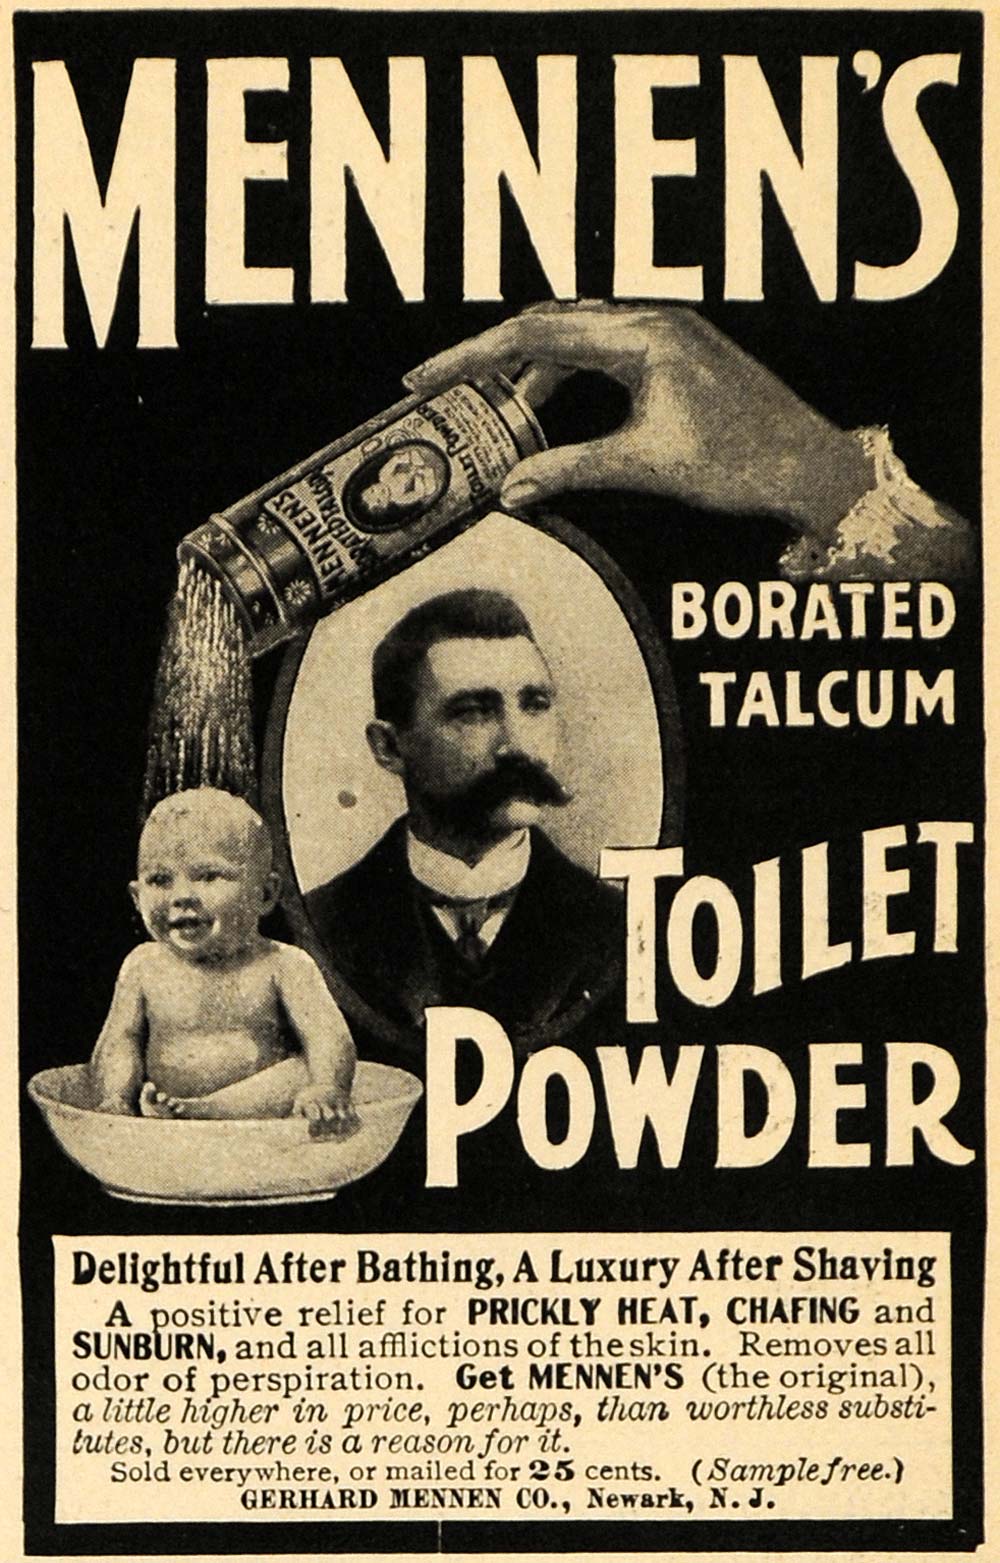 1901 Ad Gerhard Mennen's Borated Talcum Toilet Powder - ORIGINAL ADVERTISING EM2